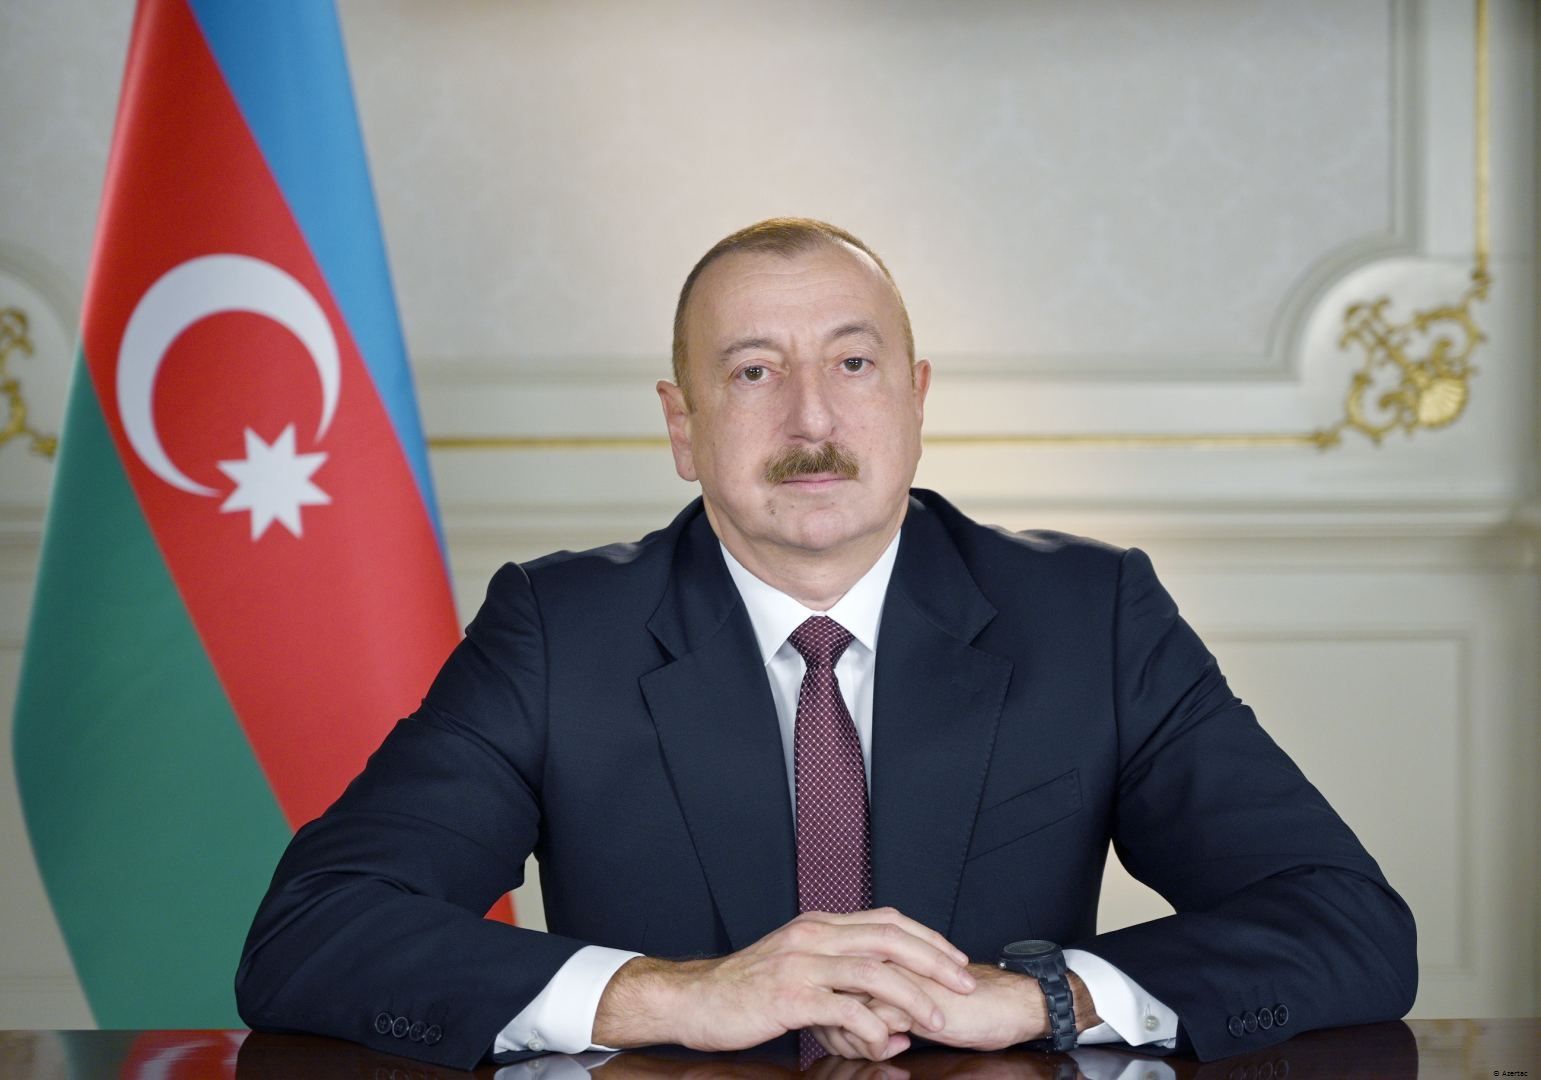 Le président Ilham Aliyev : Nous avons changé les réalités. Les Arméniens doivent donc en tenir compte